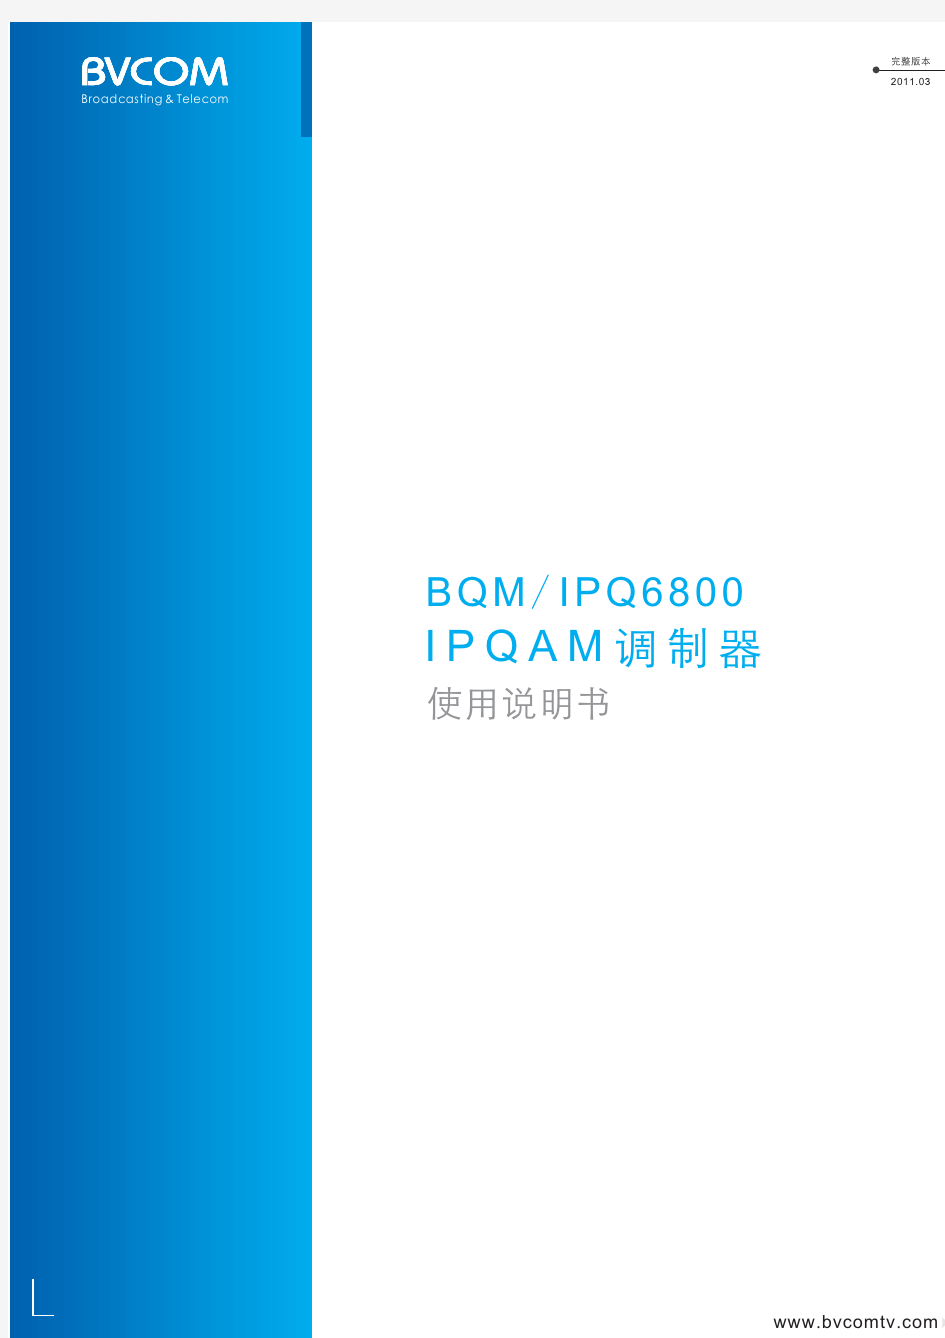 IPQAM调制器用户操作手册